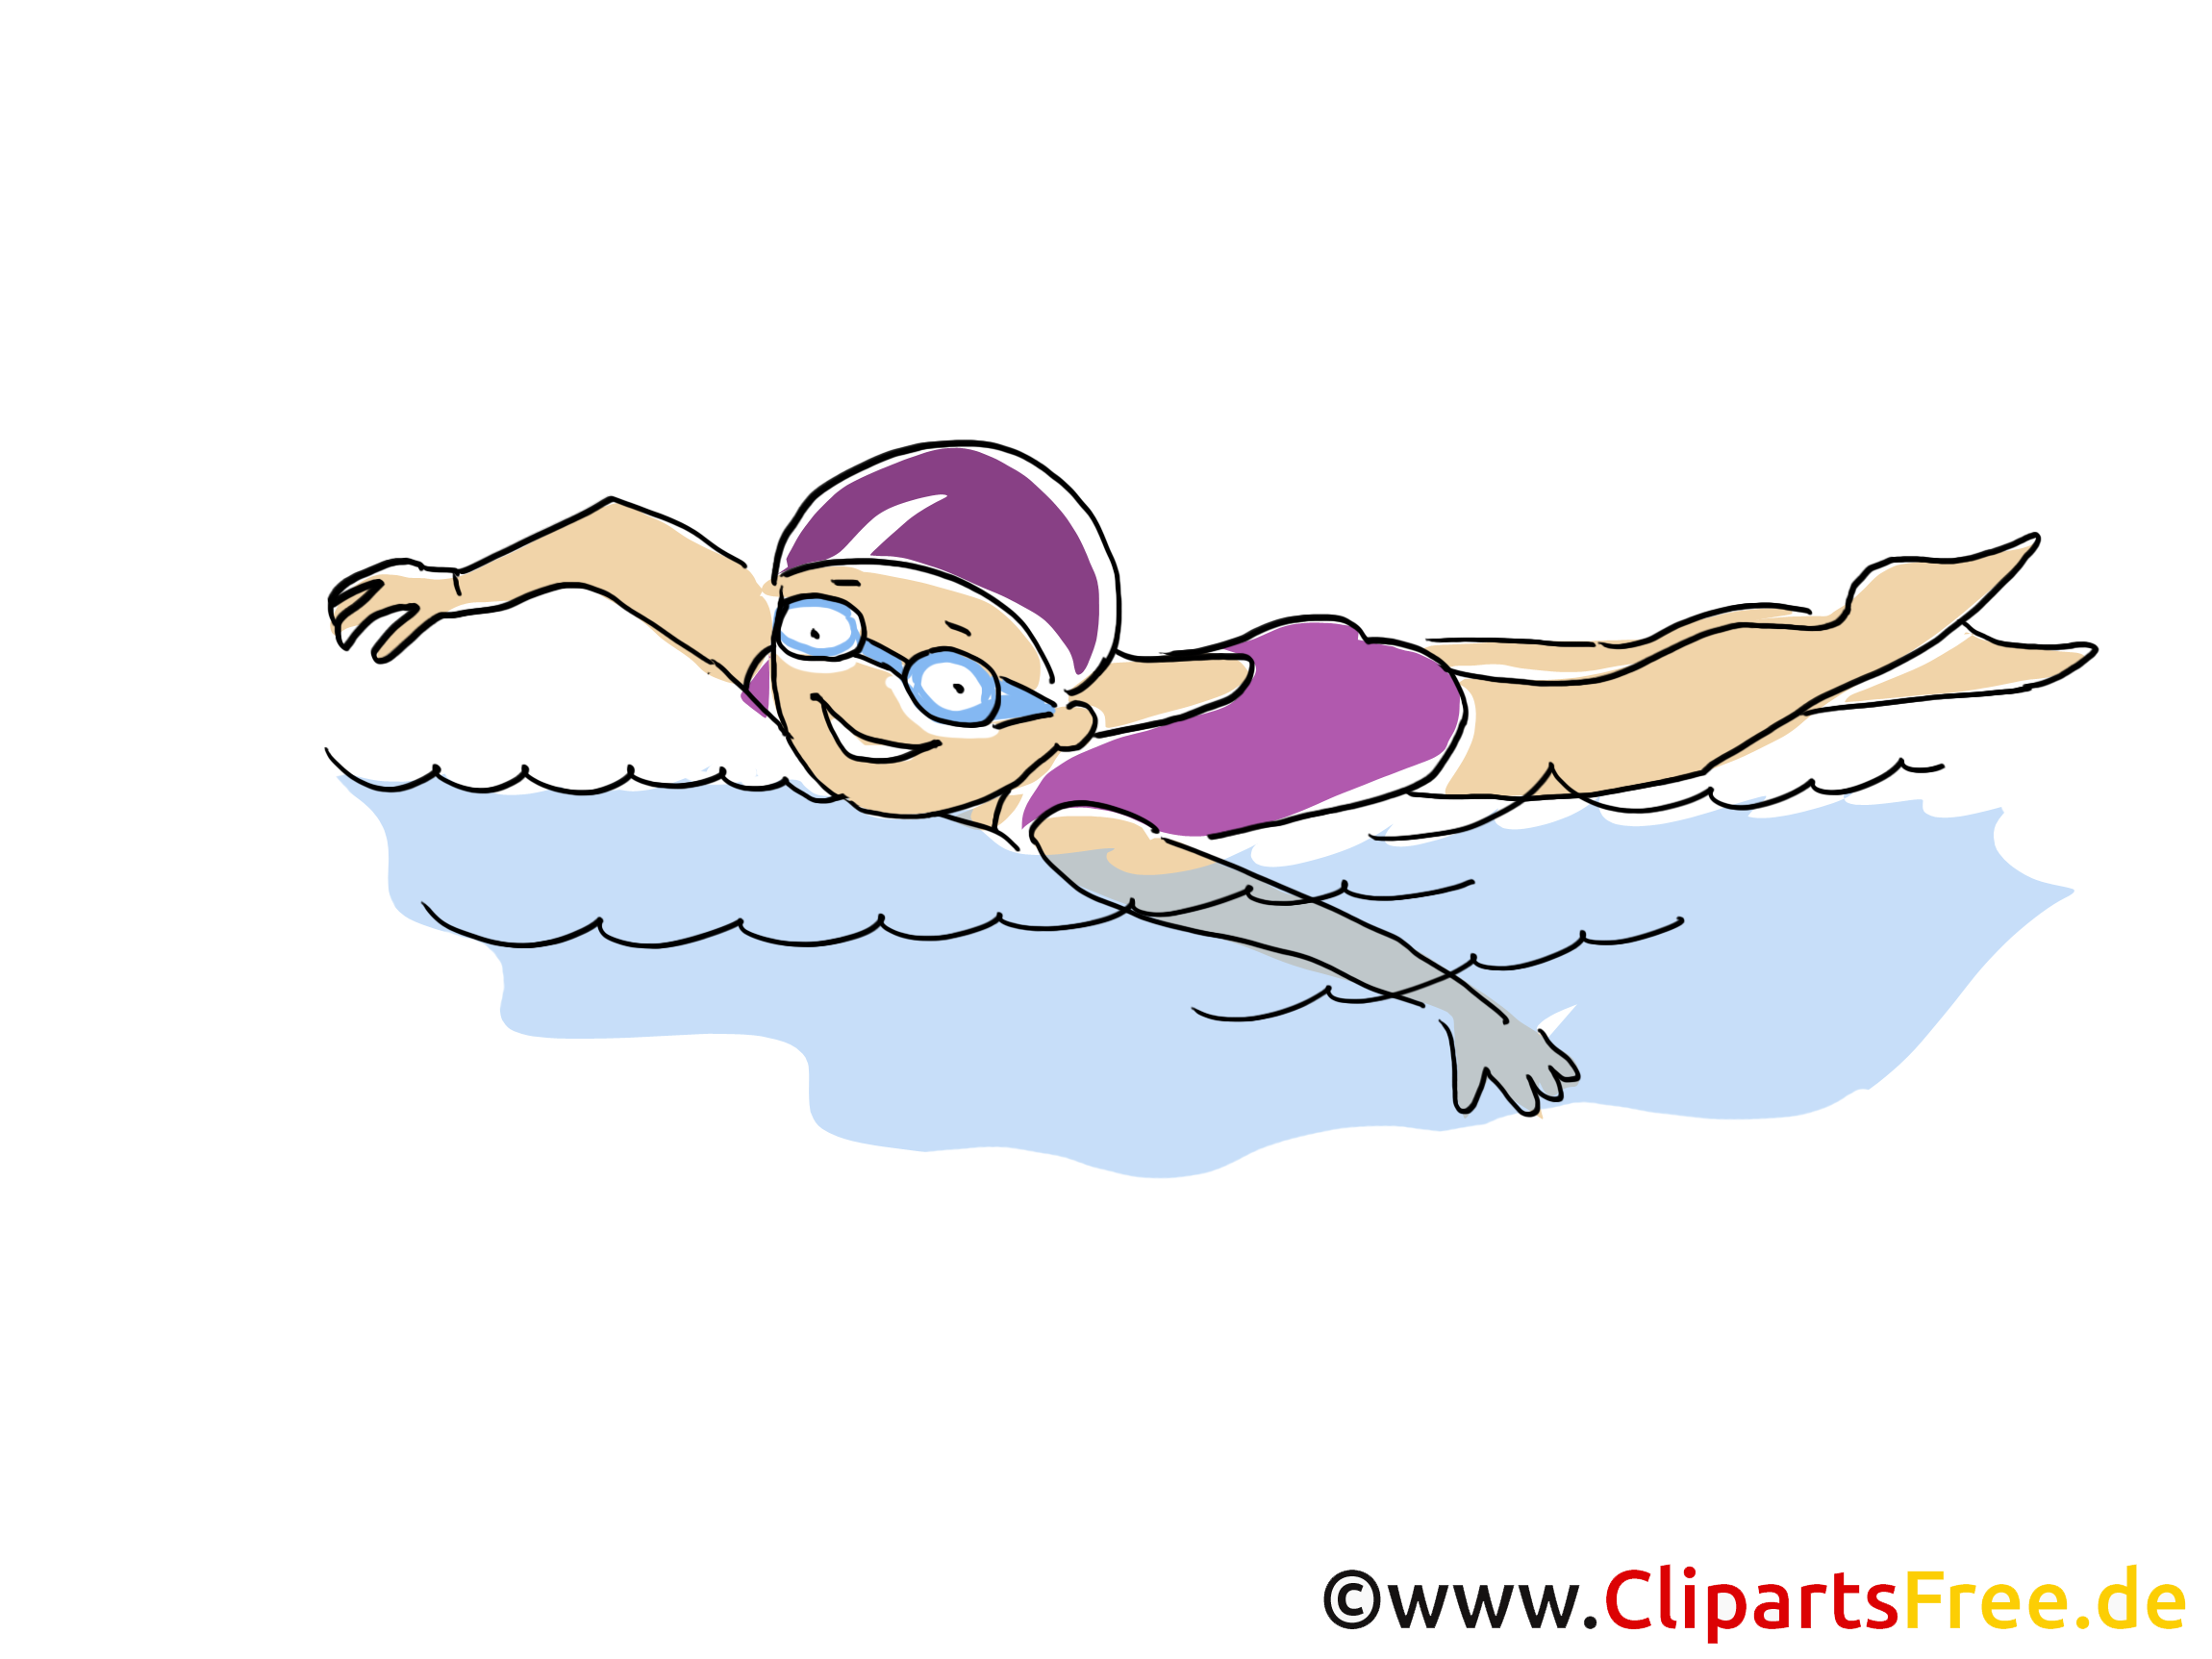 cliparts schwimmen - photo #3